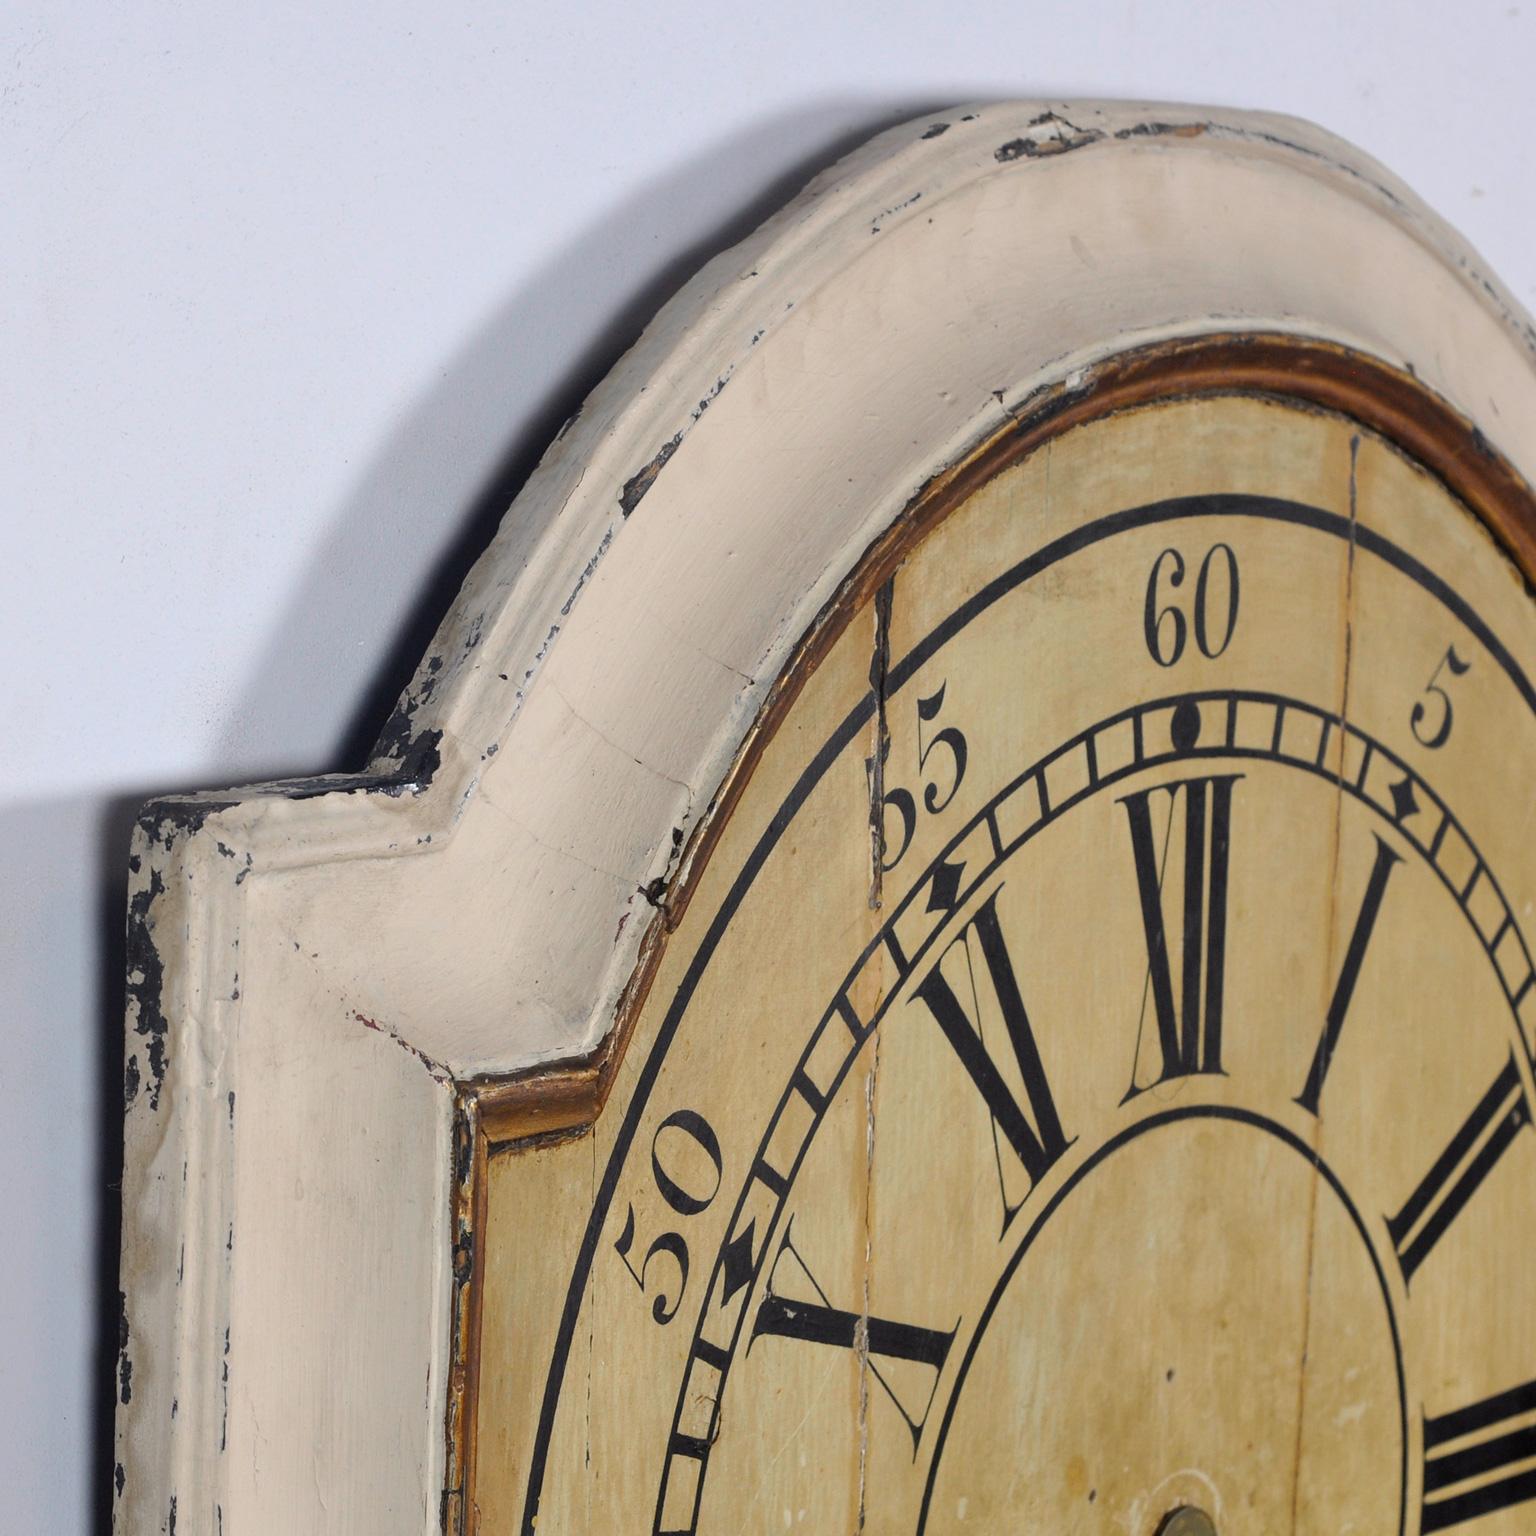 

Großes Ziffernblatt, aus Holz. Das Zifferblatt ist signiert mit G. Northam, London 1797. Zu dieser Zeit gab es in London einen Uhrmacher namens George Northam, der höchstwahrscheinlich der Hersteller ist. Ein schönes dekoratives Stück. Die Uhr ist